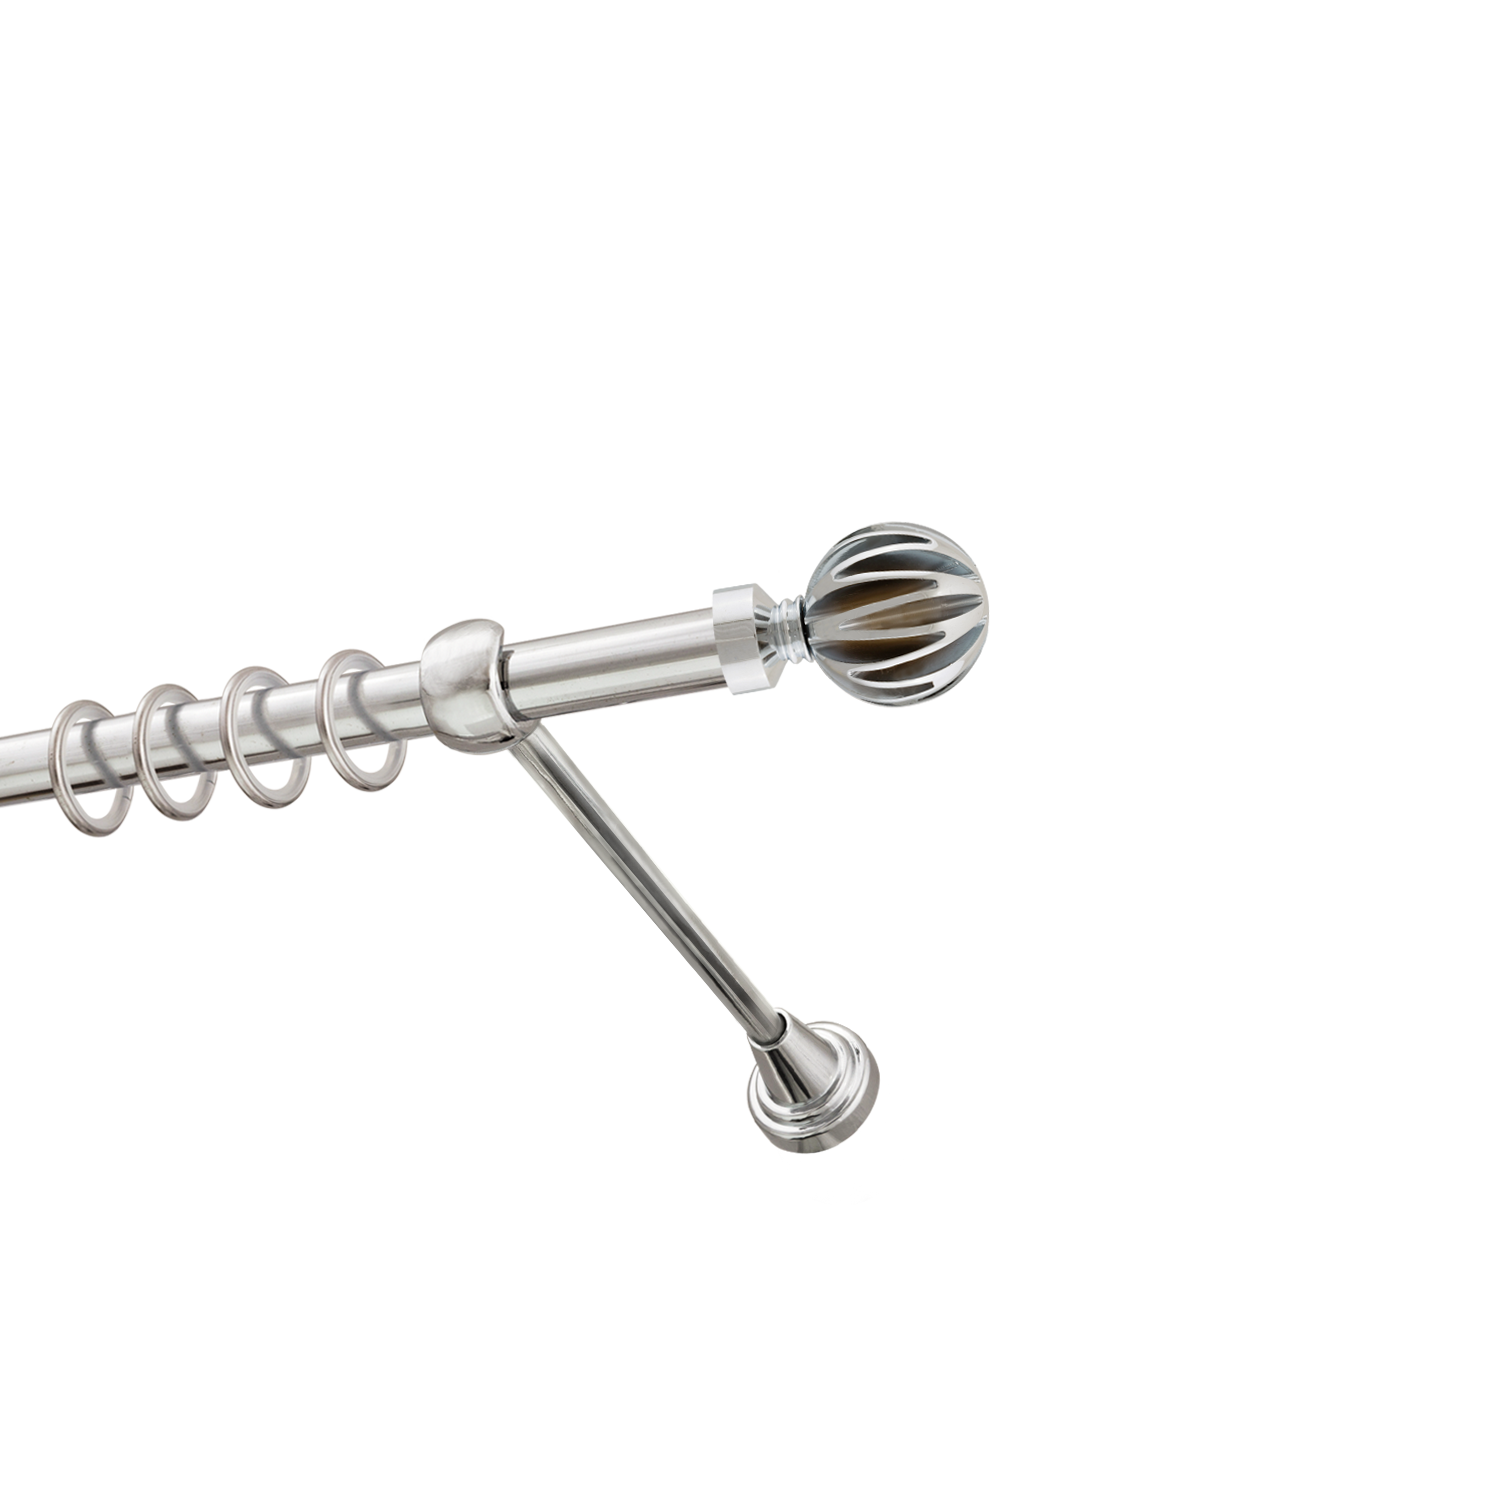 Металлический карниз для штор Шафран, однорядный 16 мм, серебро, гладкая штанга, длина 140 см